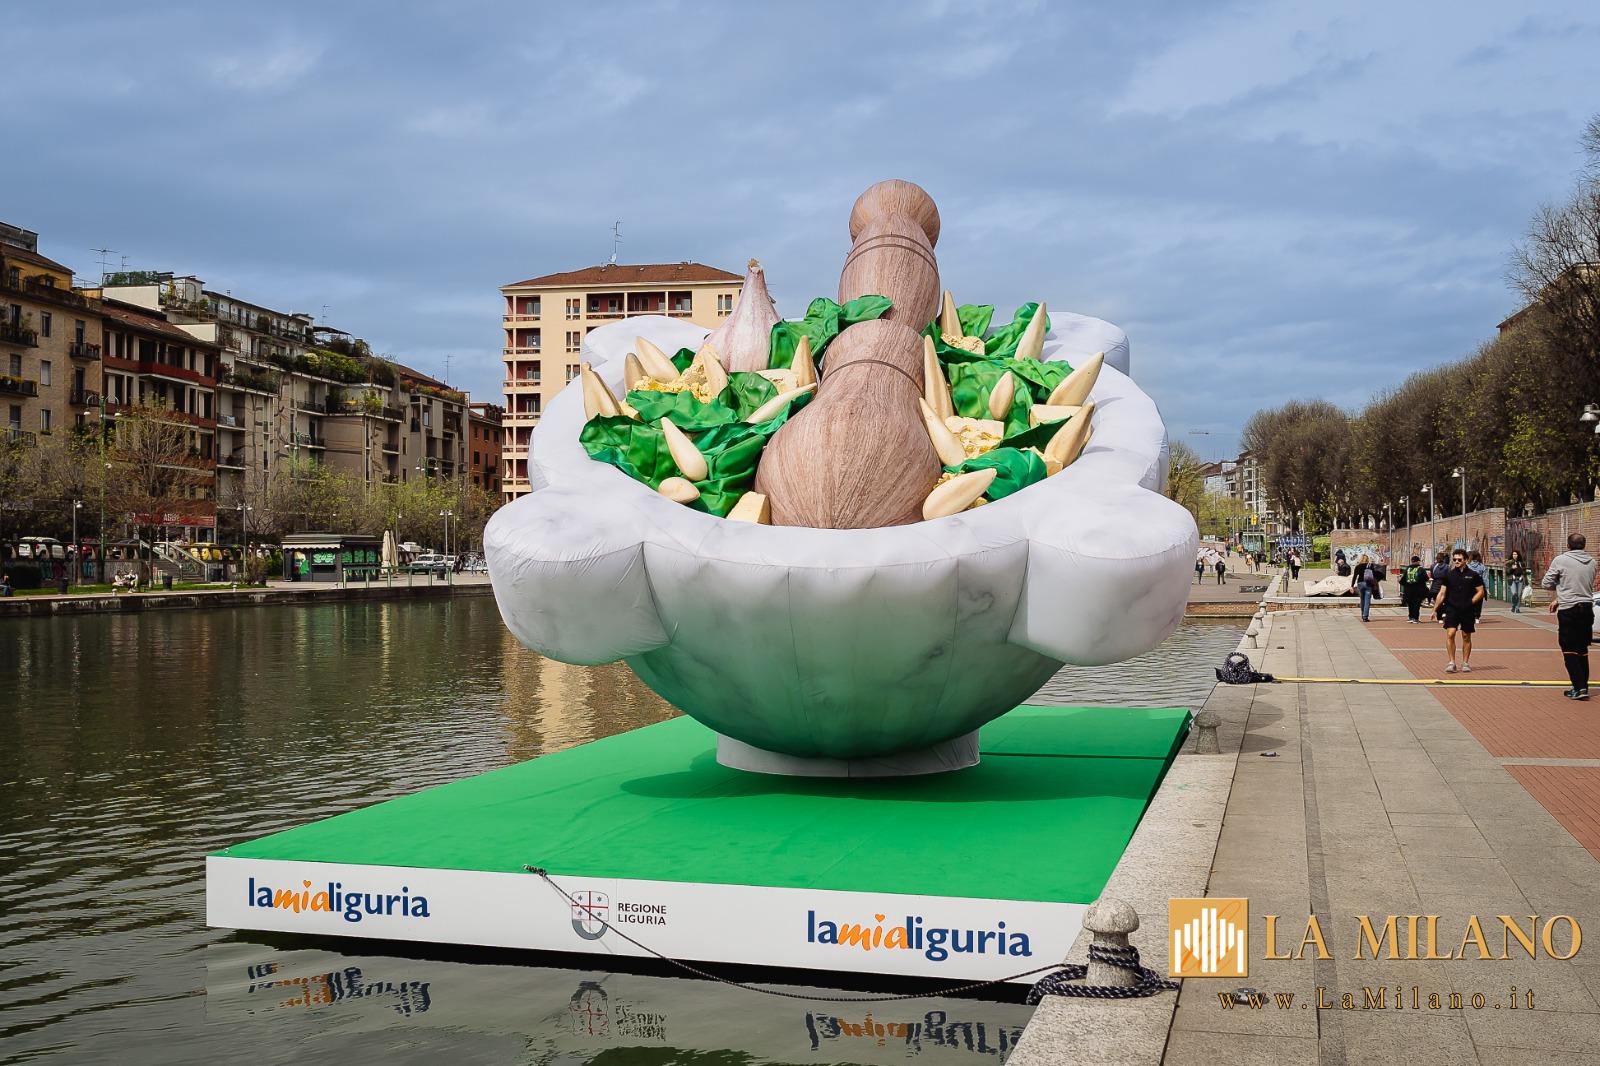 #Pesto masterpiece of Liguria: il mega mortaio della campagna promozionale di Regione Liguria approda a Milano